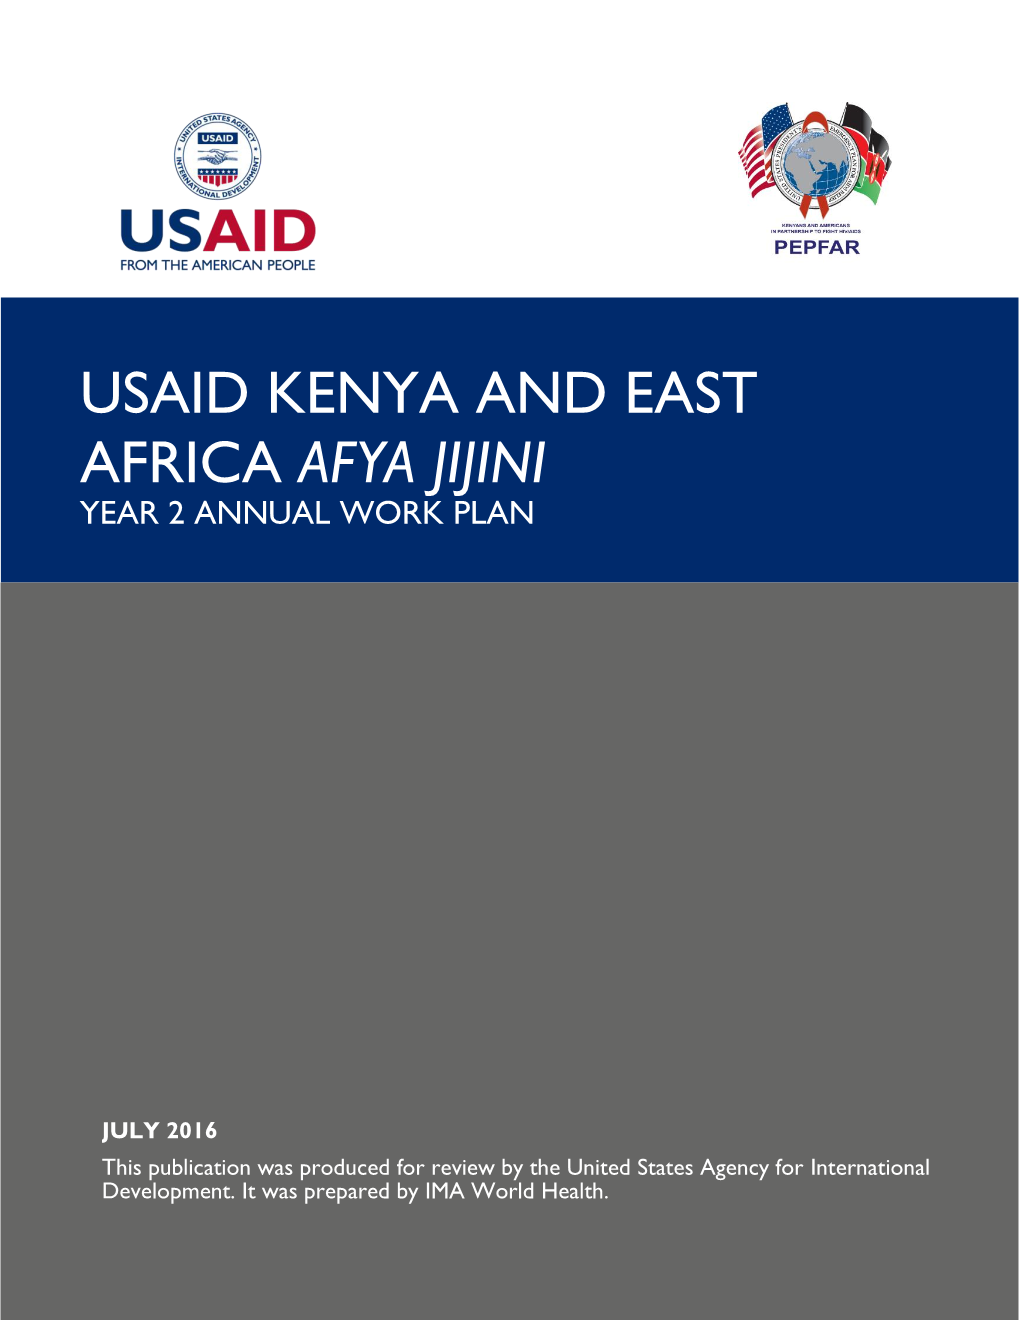 Usaid Kenya and East Africa Afya Jijini Year 2 Annual Work Plan